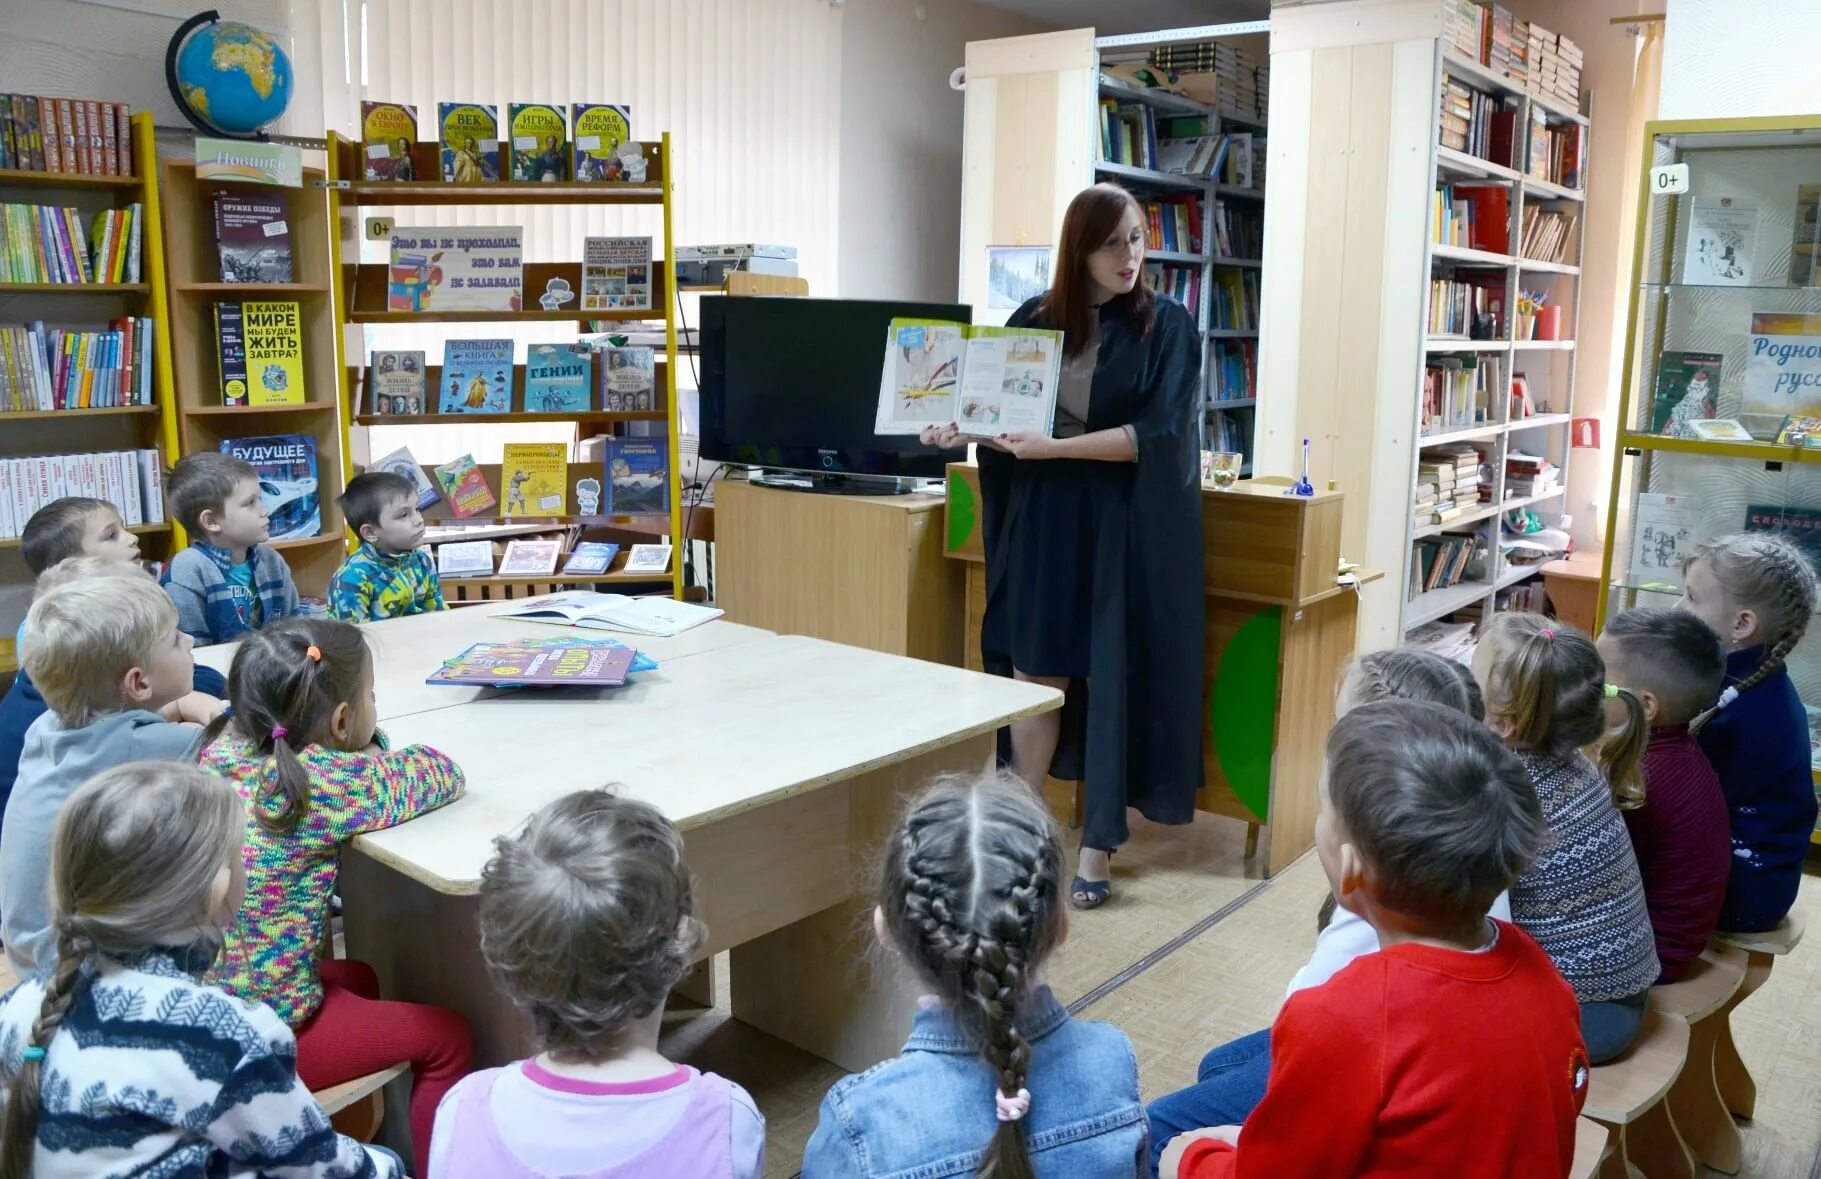 Сайт пенза библиотека. Пензенская областная библиотека для детей и юношества. Библиотека юношества. Детская библиотека Пенза. Экскурсия в библиотеку Пенза.